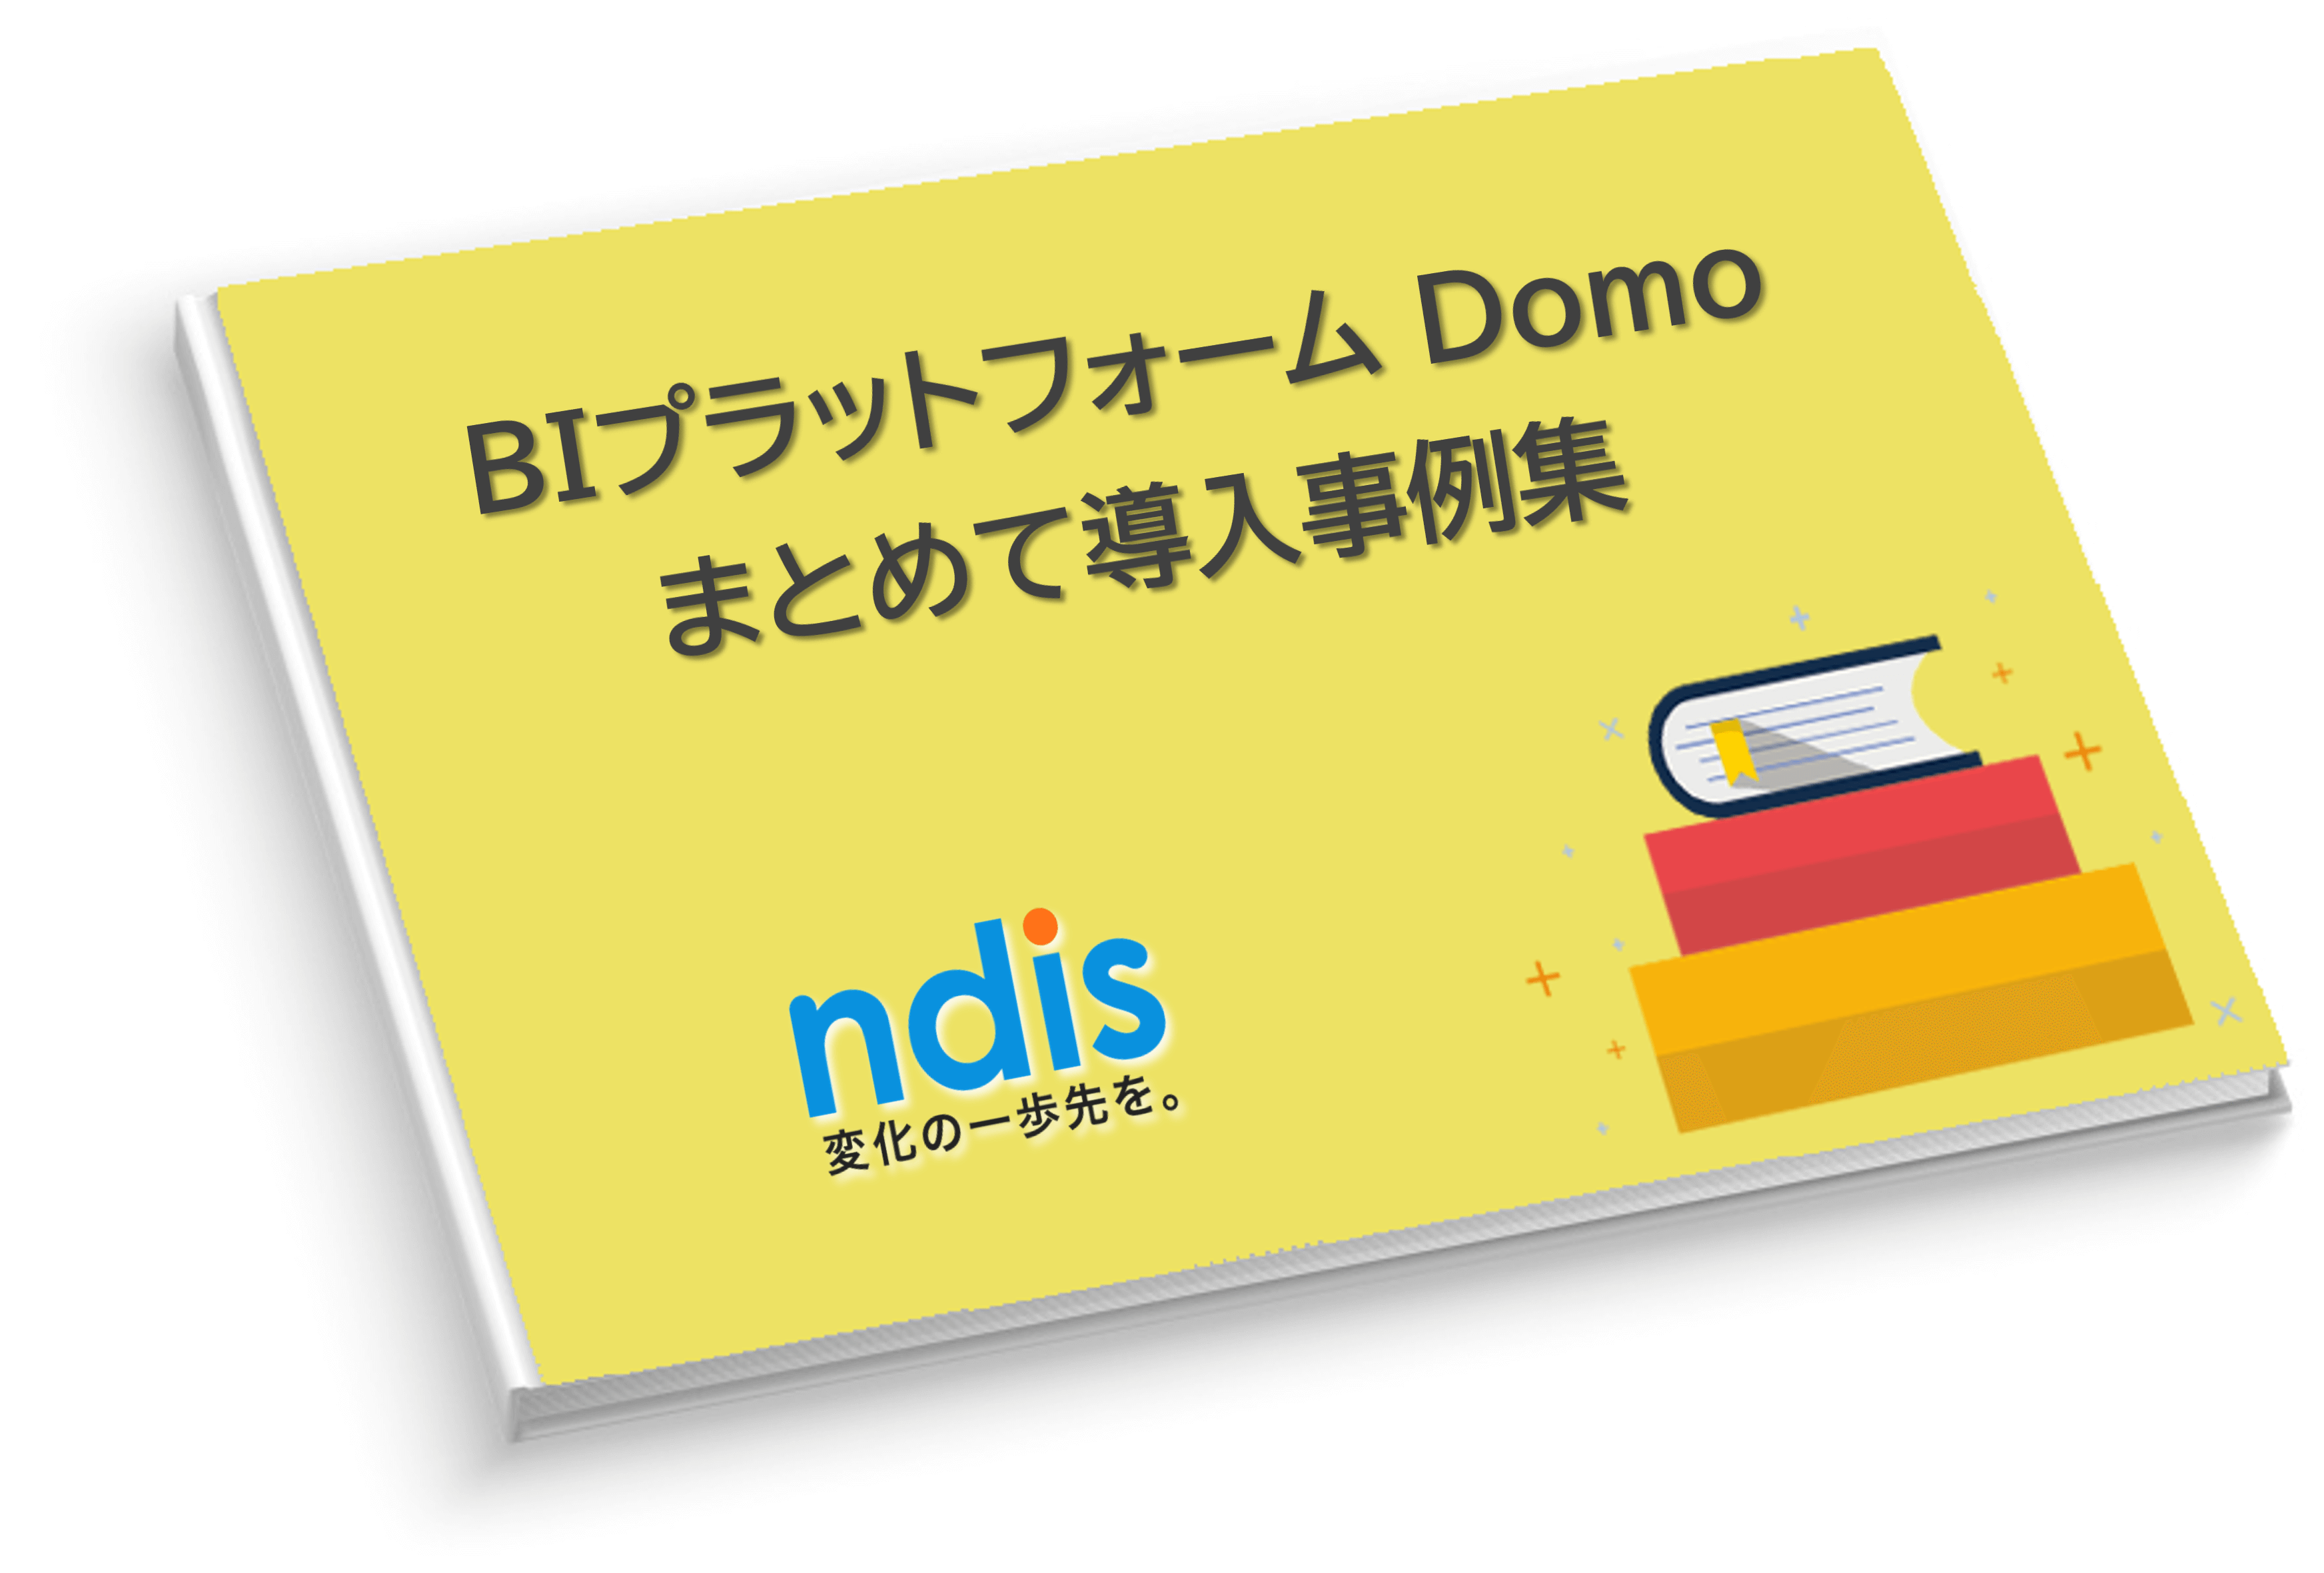 Domo資料08_BIプラットフォーム Domoまとめて成功事例集